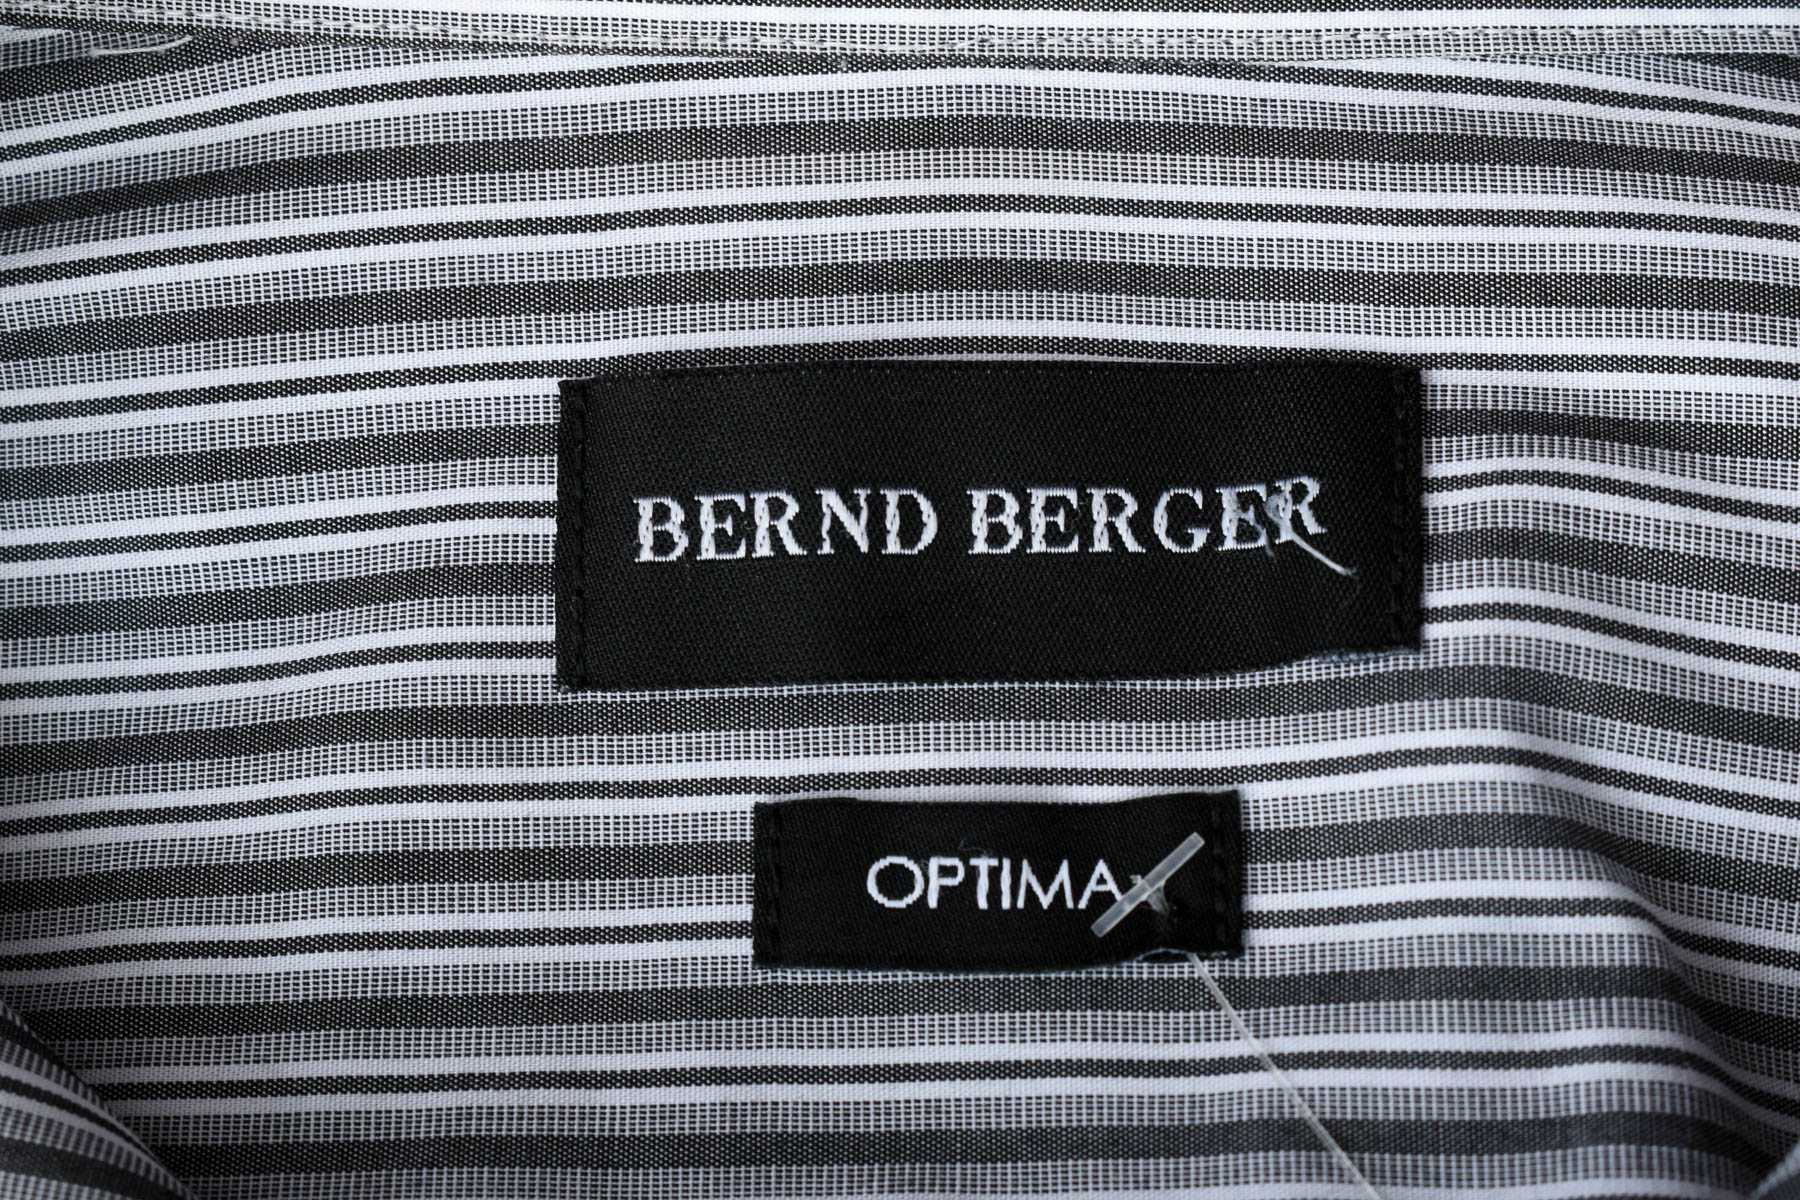 Ανδρικό πουκάμισο - Bernd Berger - 2